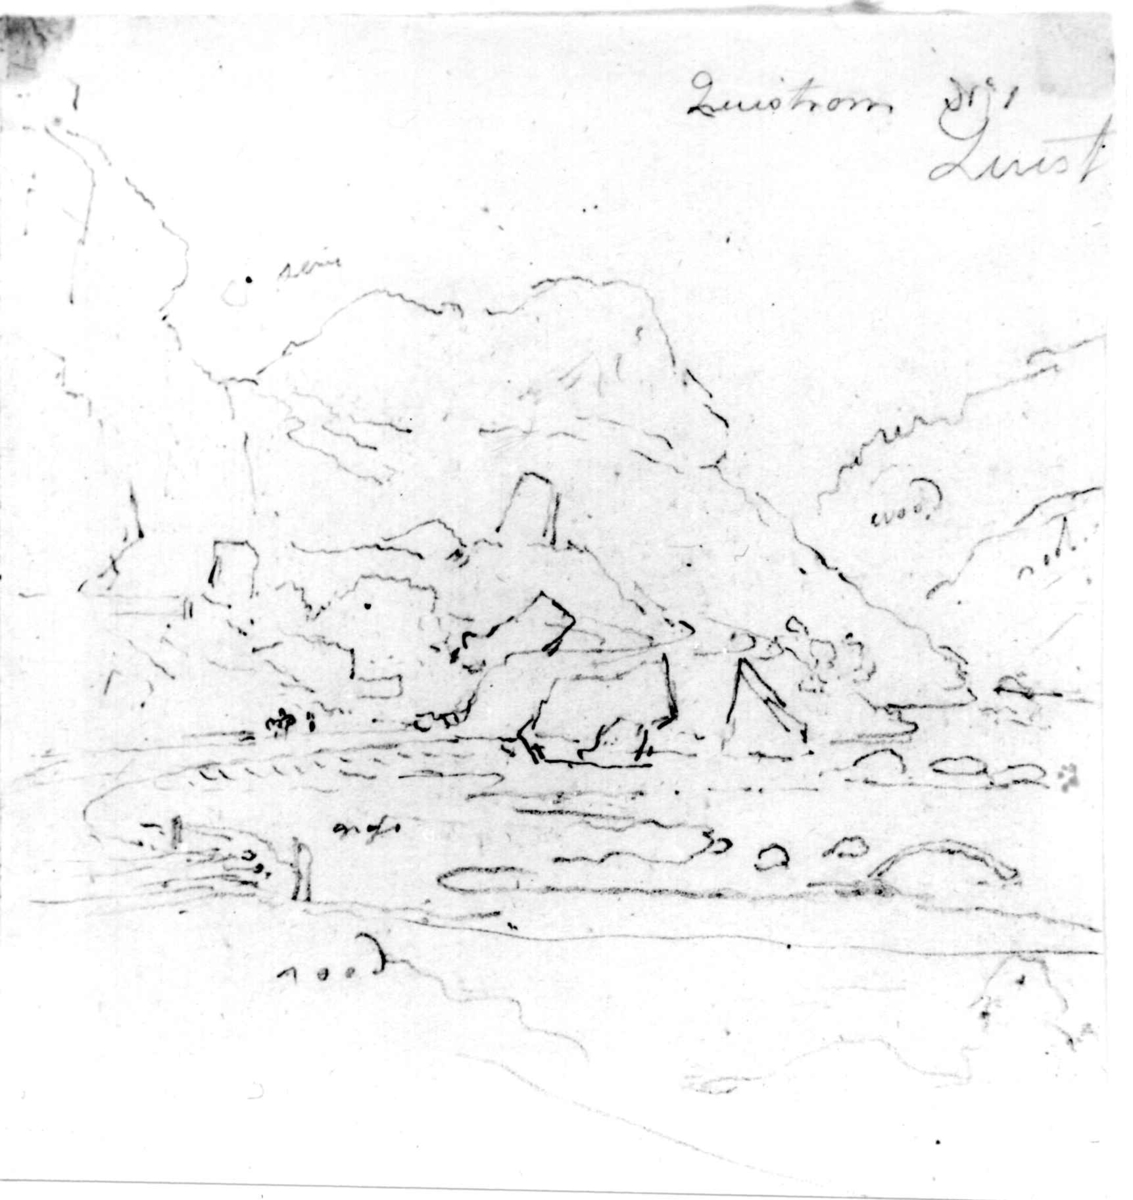 Kvistrum, Båhuslen, Sverige.
Fra skissealbum av John W. Edy, "Drawings Norway 1800".